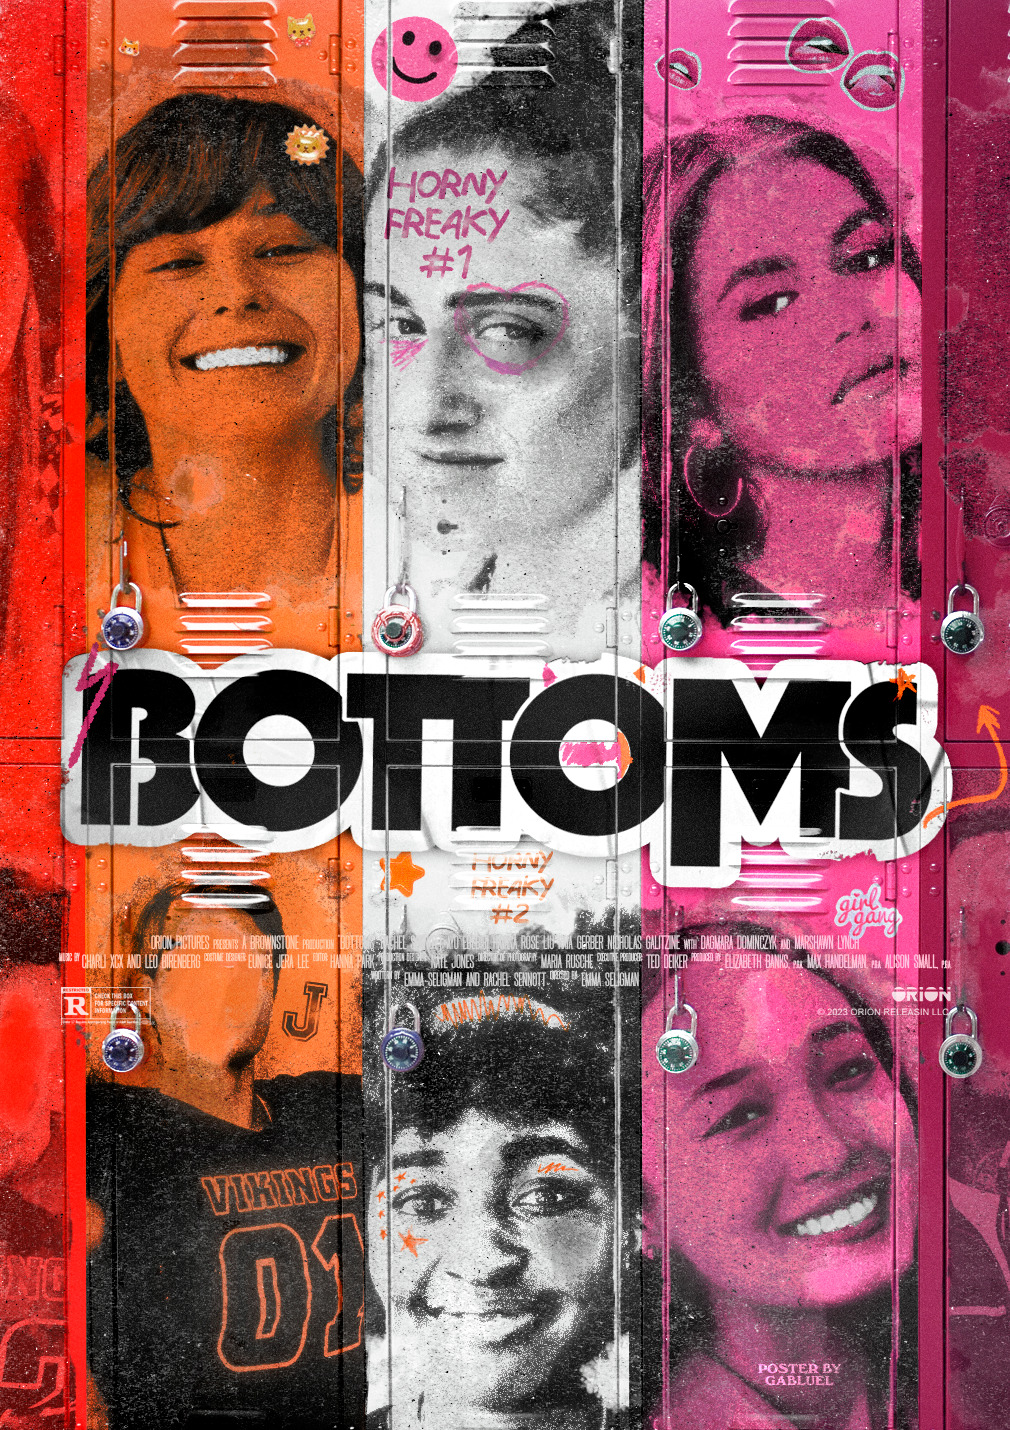 Bottoms Poster, Gabluel